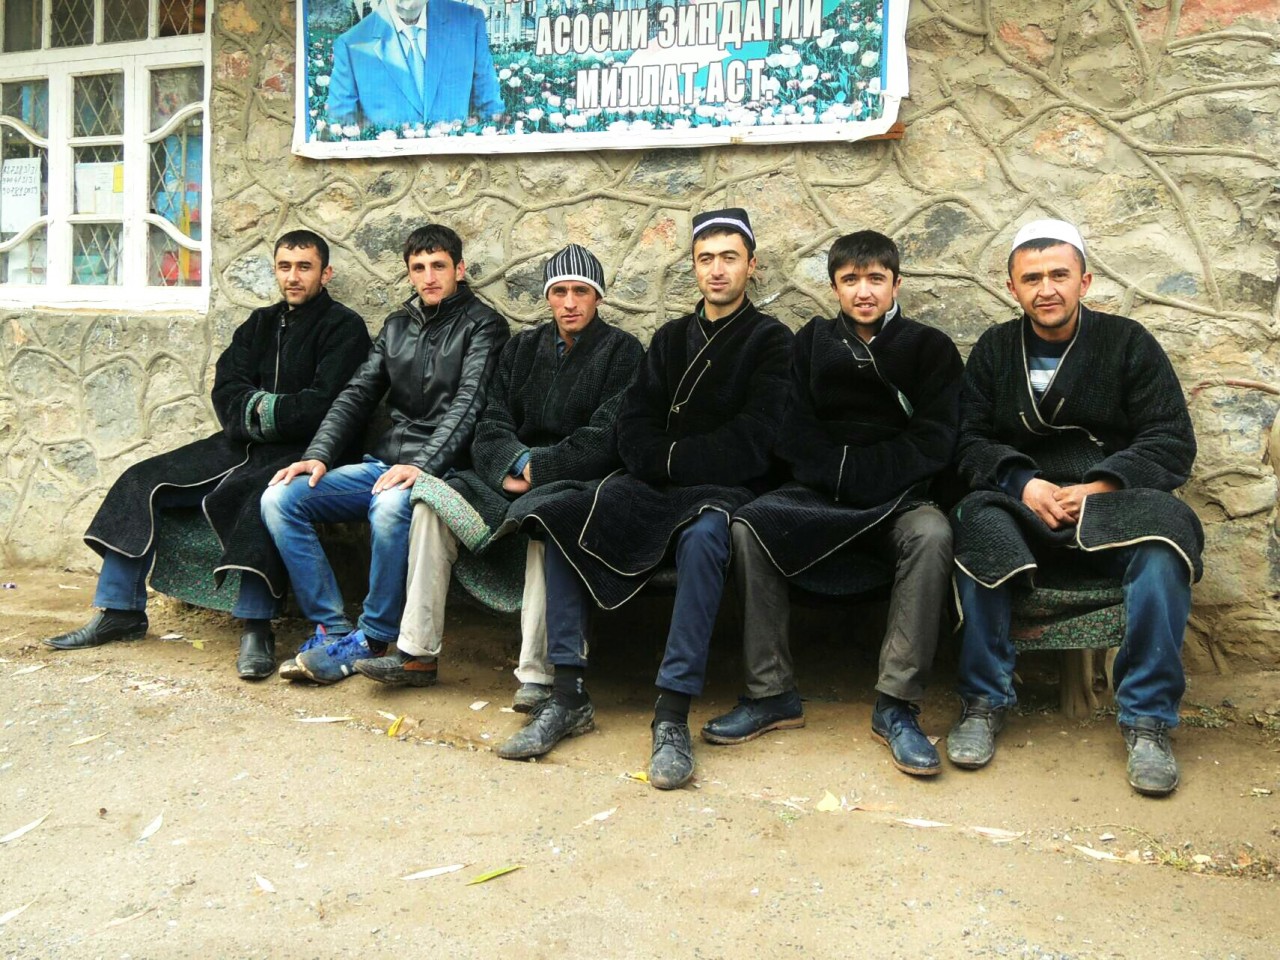 Some guys in Tajikistan